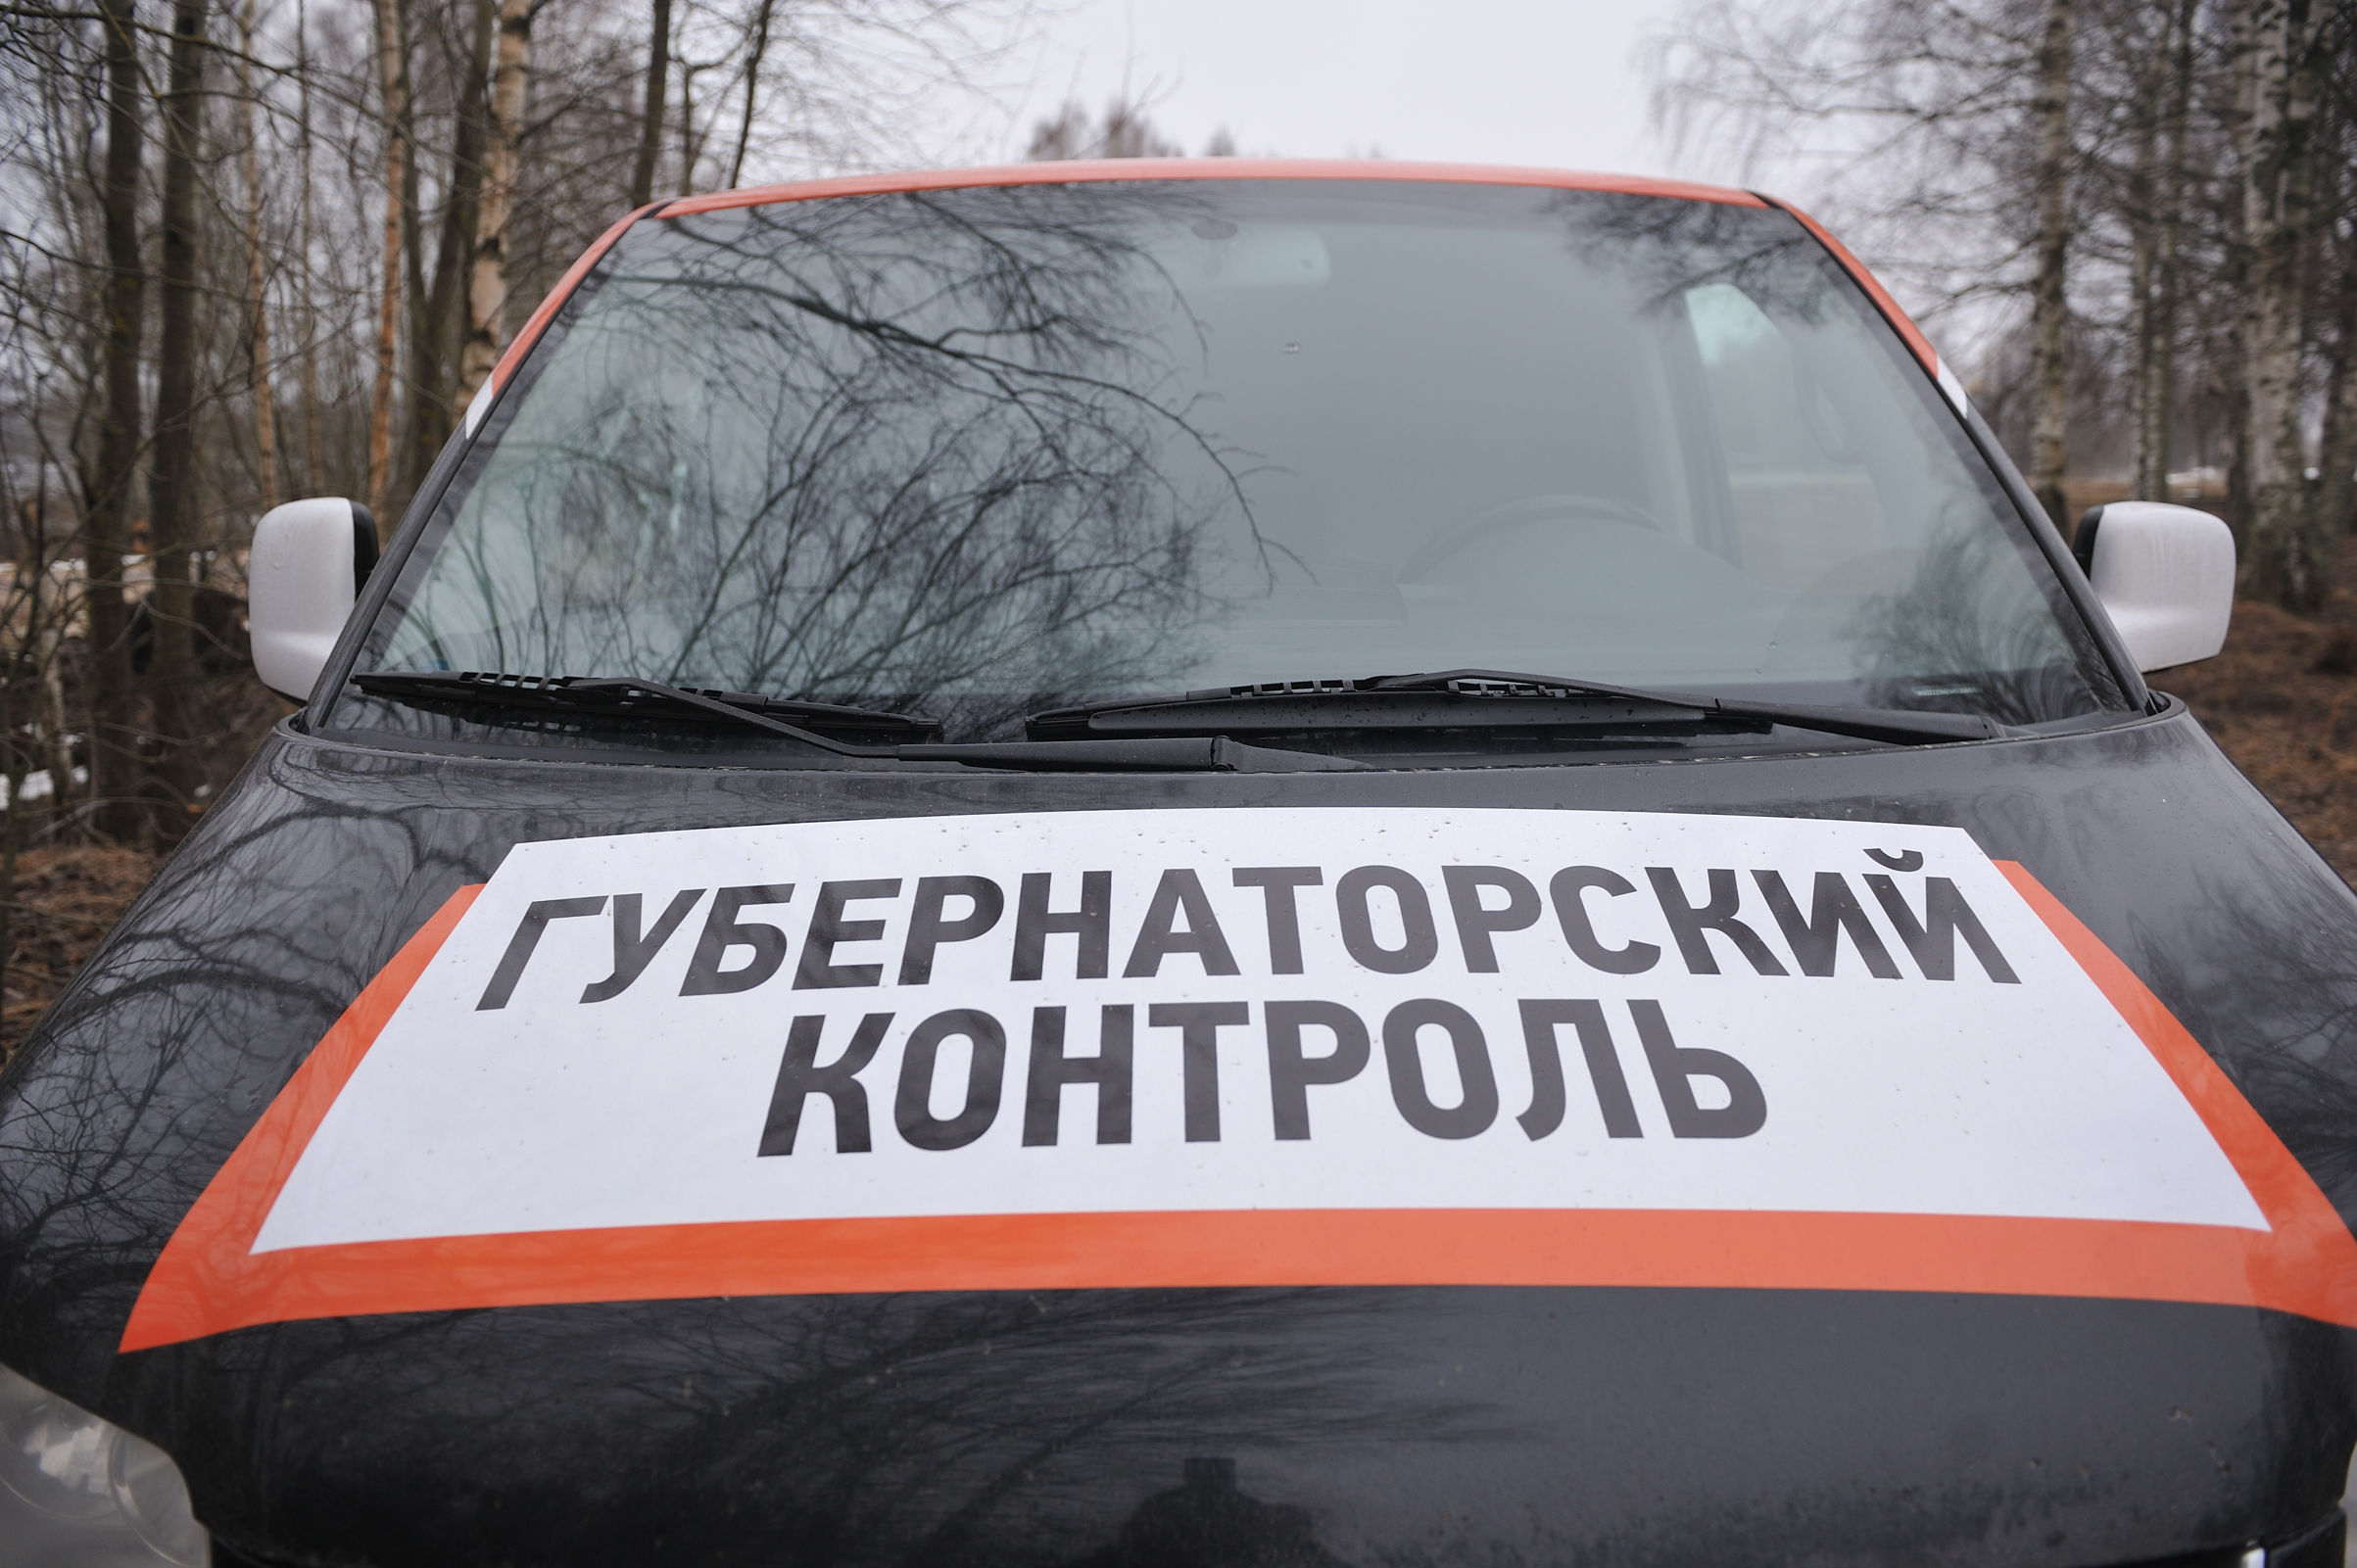 Группа губернаторского контроля проверила объекты в Рыбинске и Даниловском районах